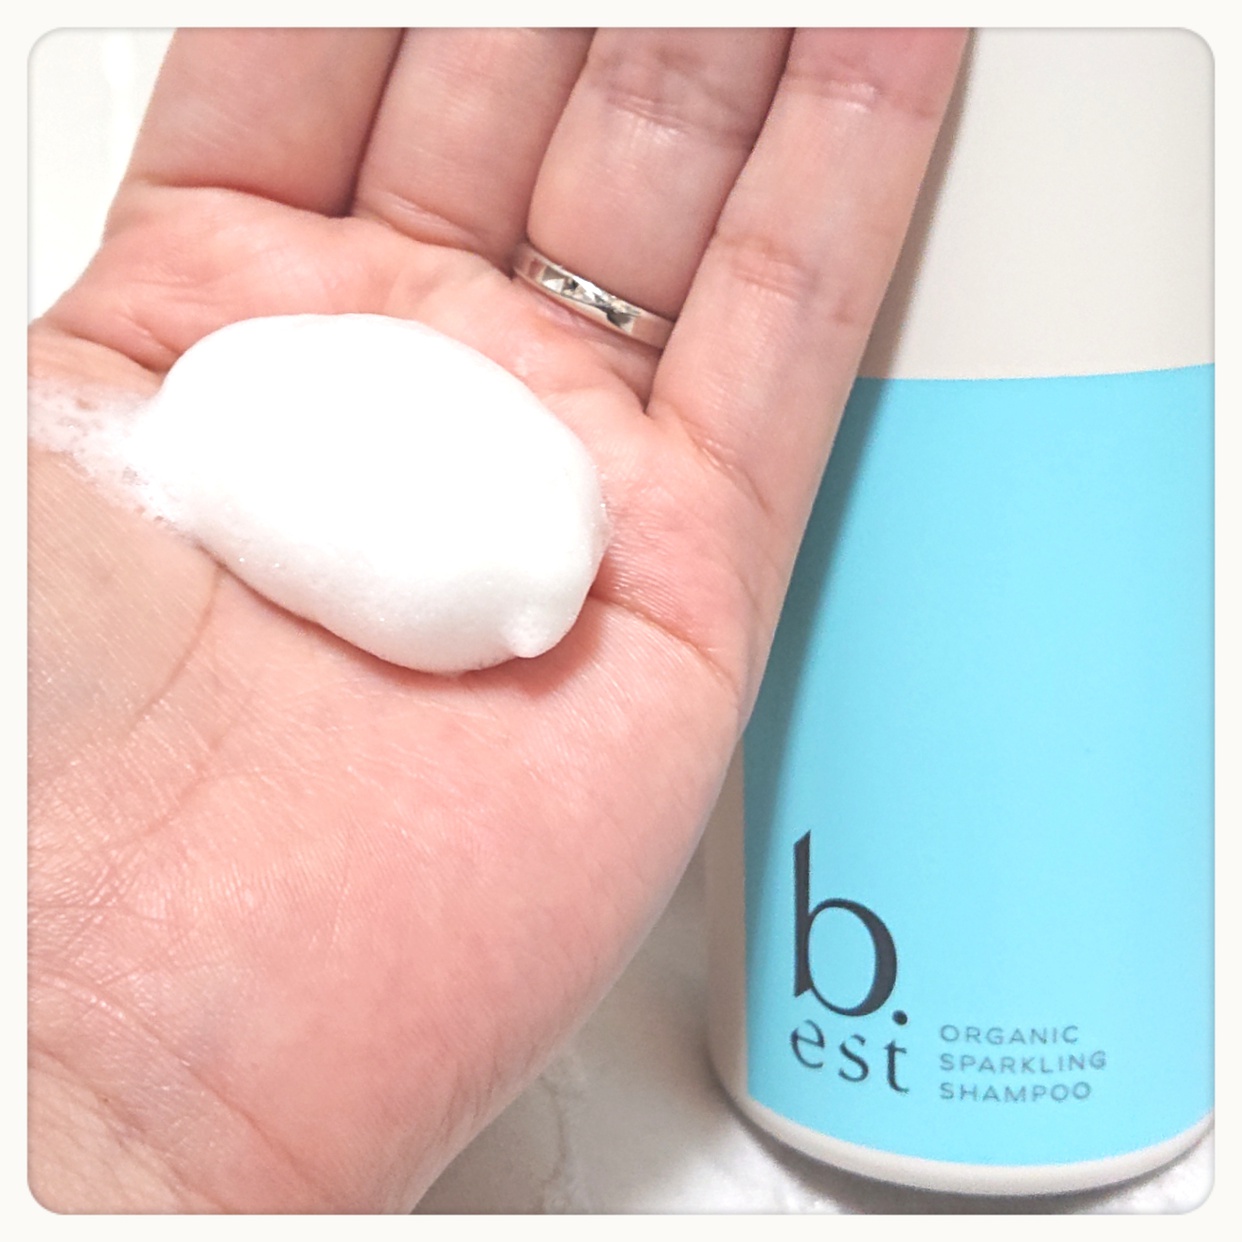 b.est(ビーエスト) organic sparkling shampooを使ったnakoさんのクチコミ画像4